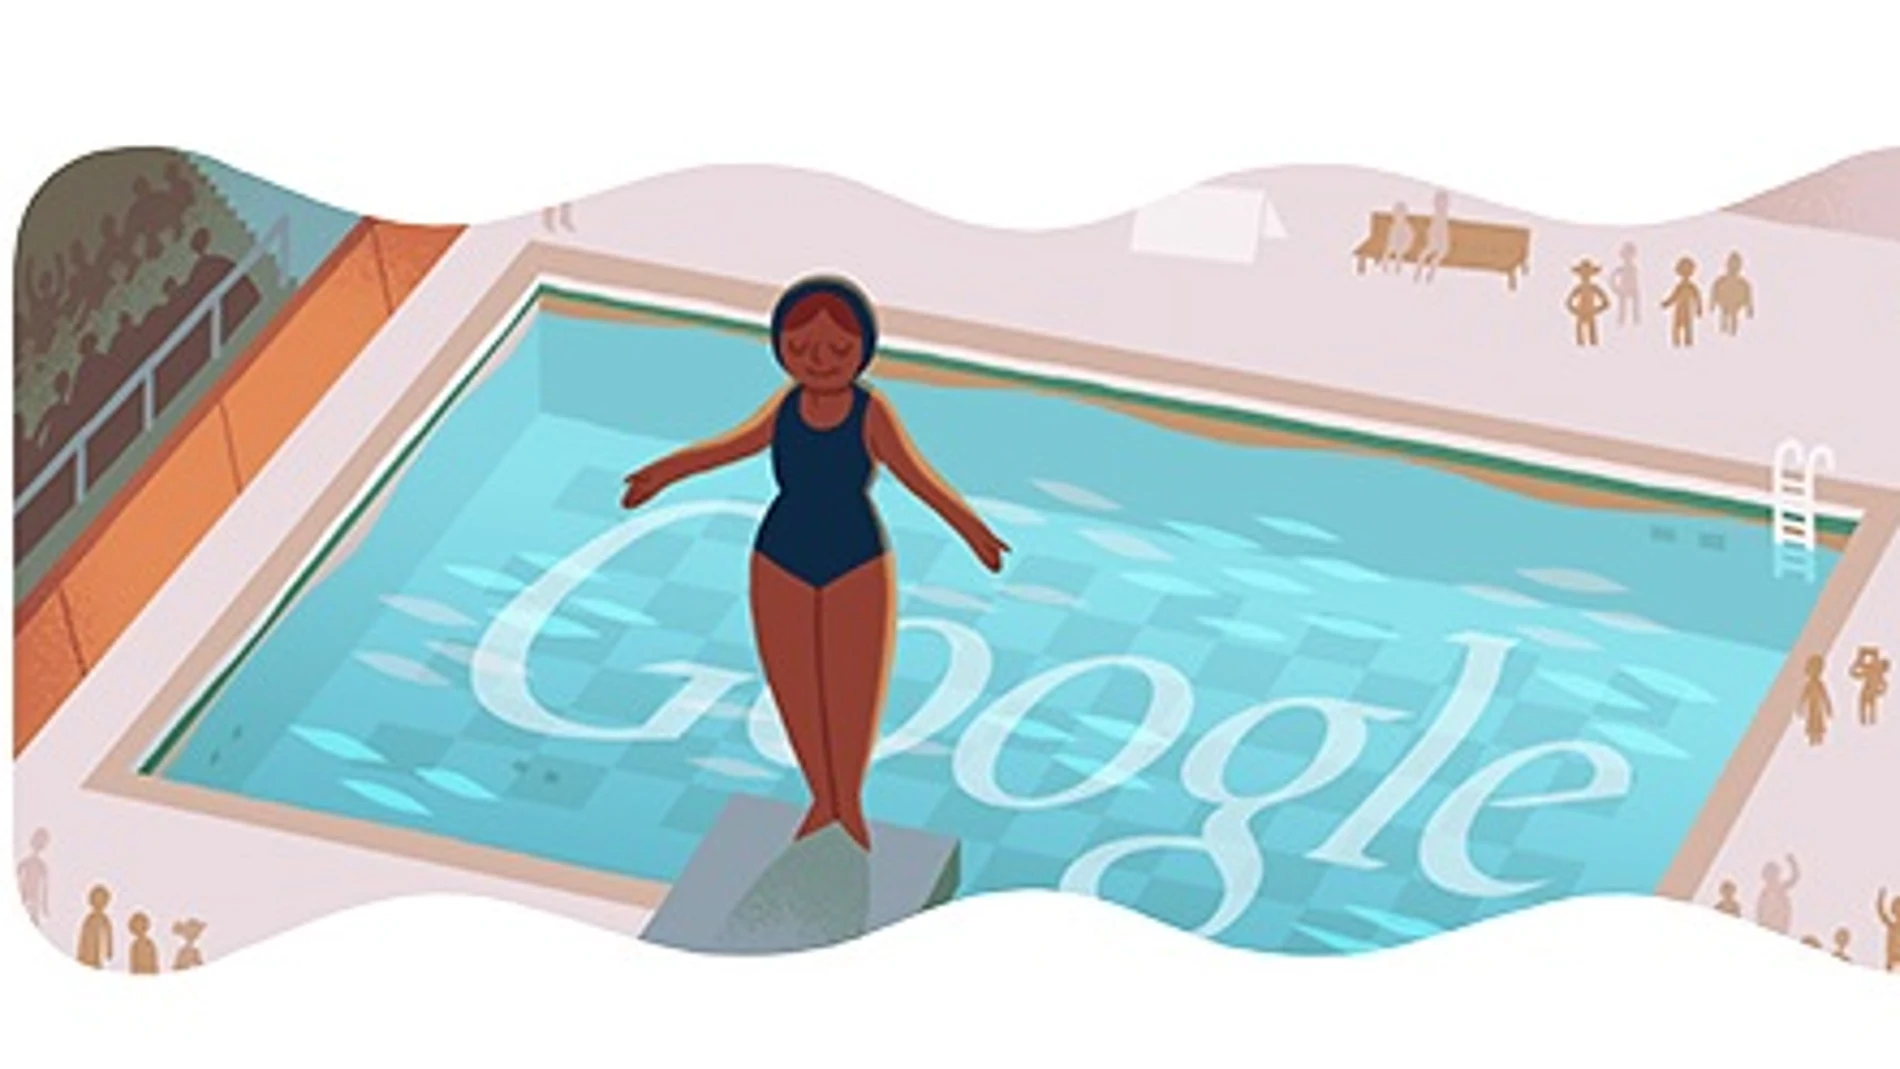 Salto de trampolín nuevo doodle olímpico de Google